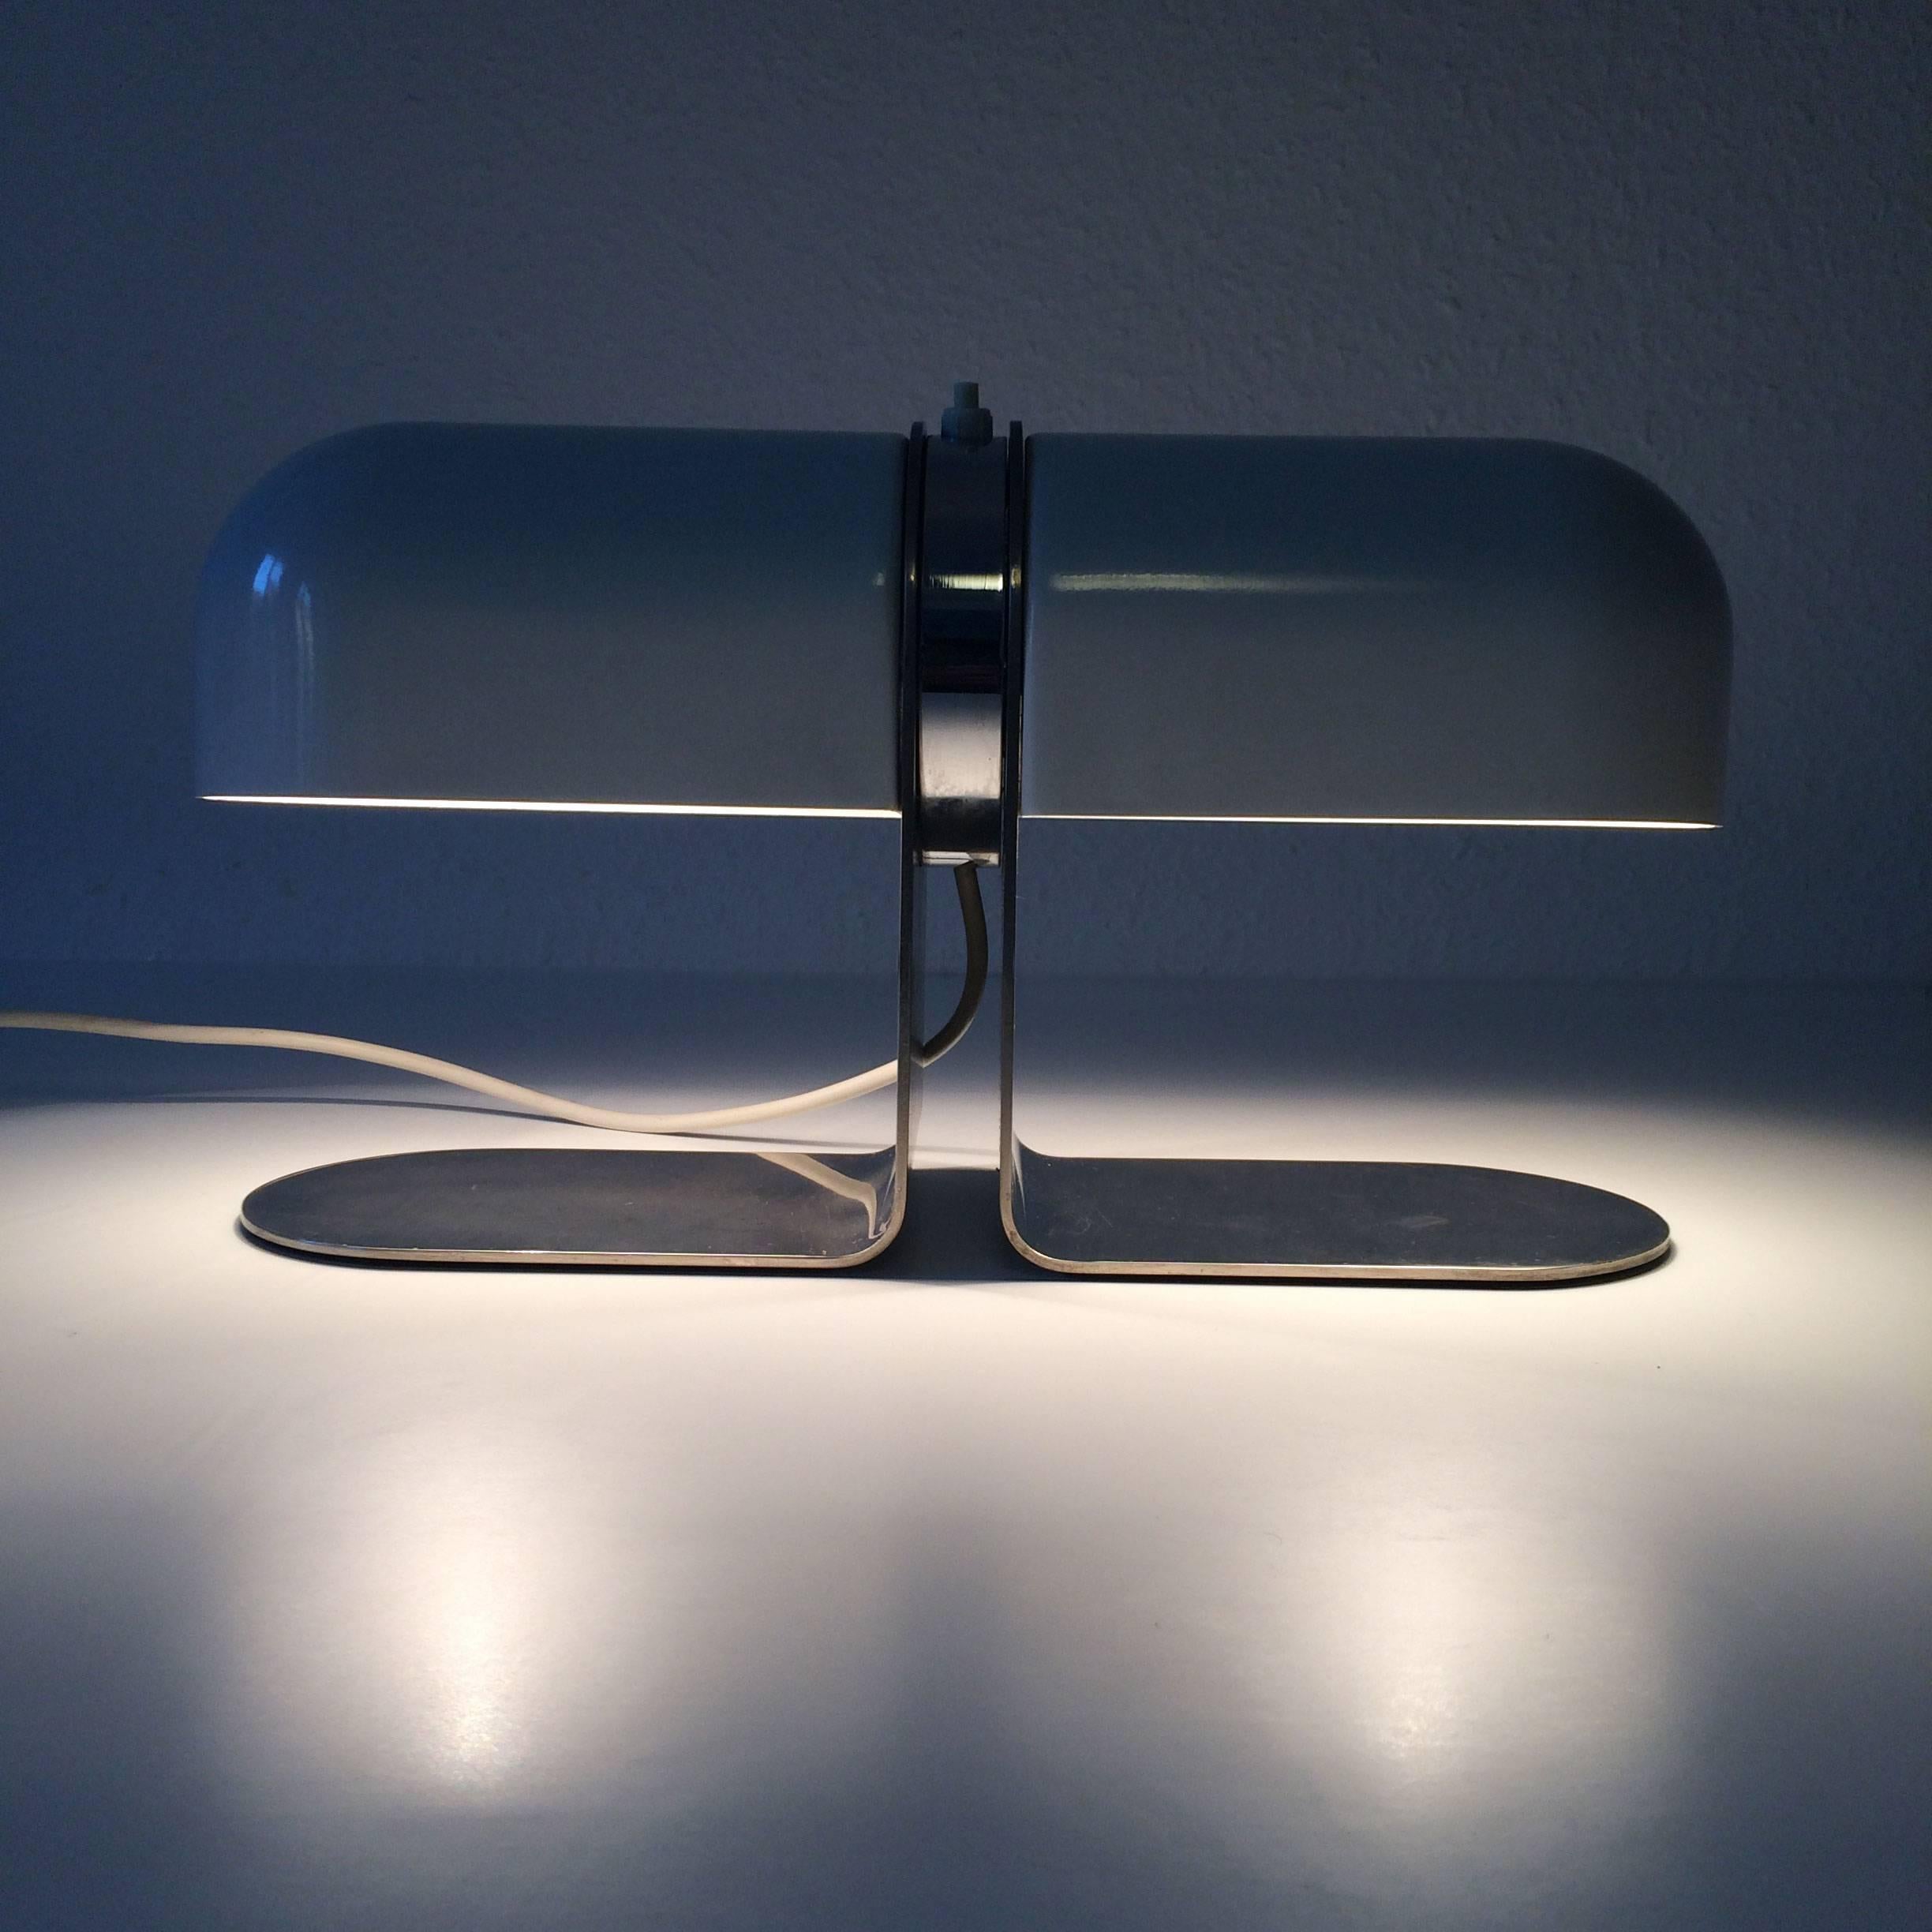 Lampe de table ou de bureau extrêmement rare et élégante. Conçu par André Ricard en 1973. Fabriqué par Metalarte, Espagne. Avec la marque gravée du fabricant. 

Réalisée en métal, la lampe de table nécessite 2 ampoules à vis E27 / E26 Edison. Il est